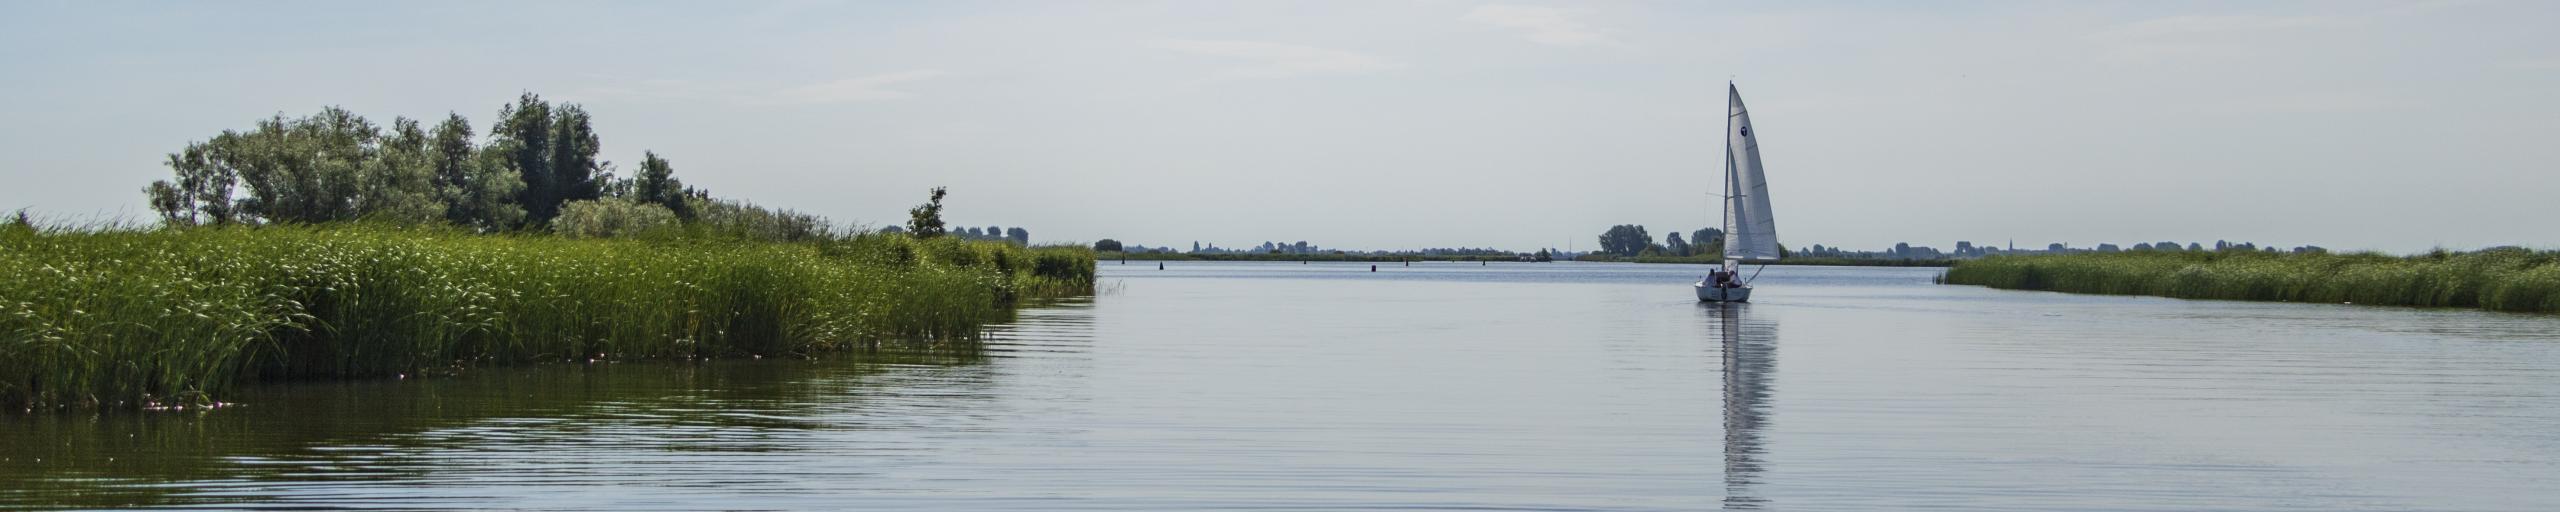 Zeilboot vaart op de Friese wateren in een natuurgebied